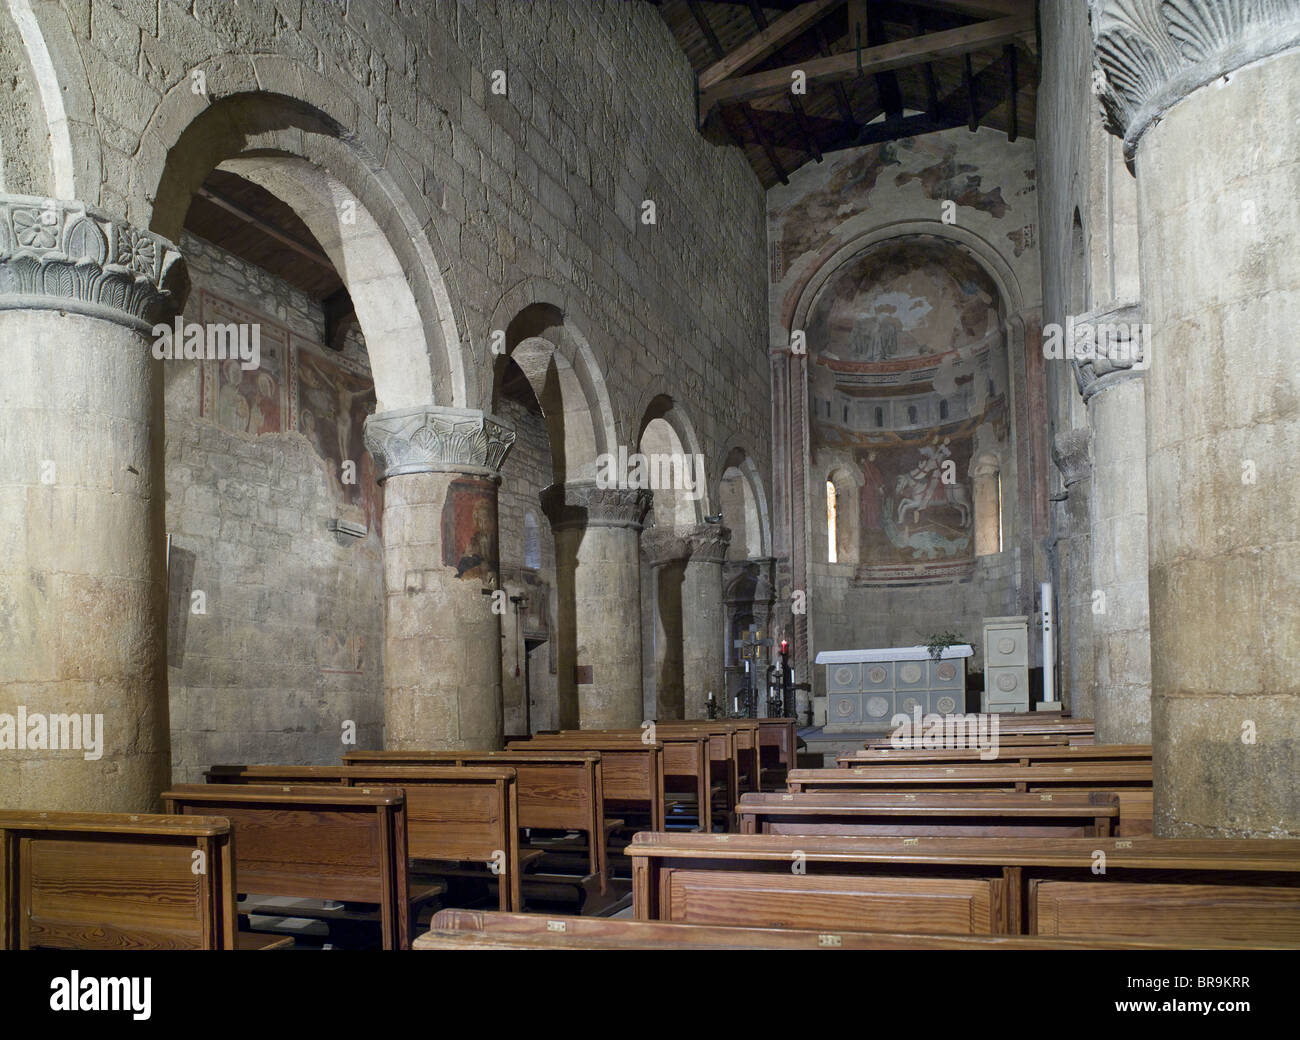 Vigoleno, Italia. La duecentesca chiesa di San Giorgio. Interno Navata e abside, con colonne romaniche e testa tonda archi. Foto Stock